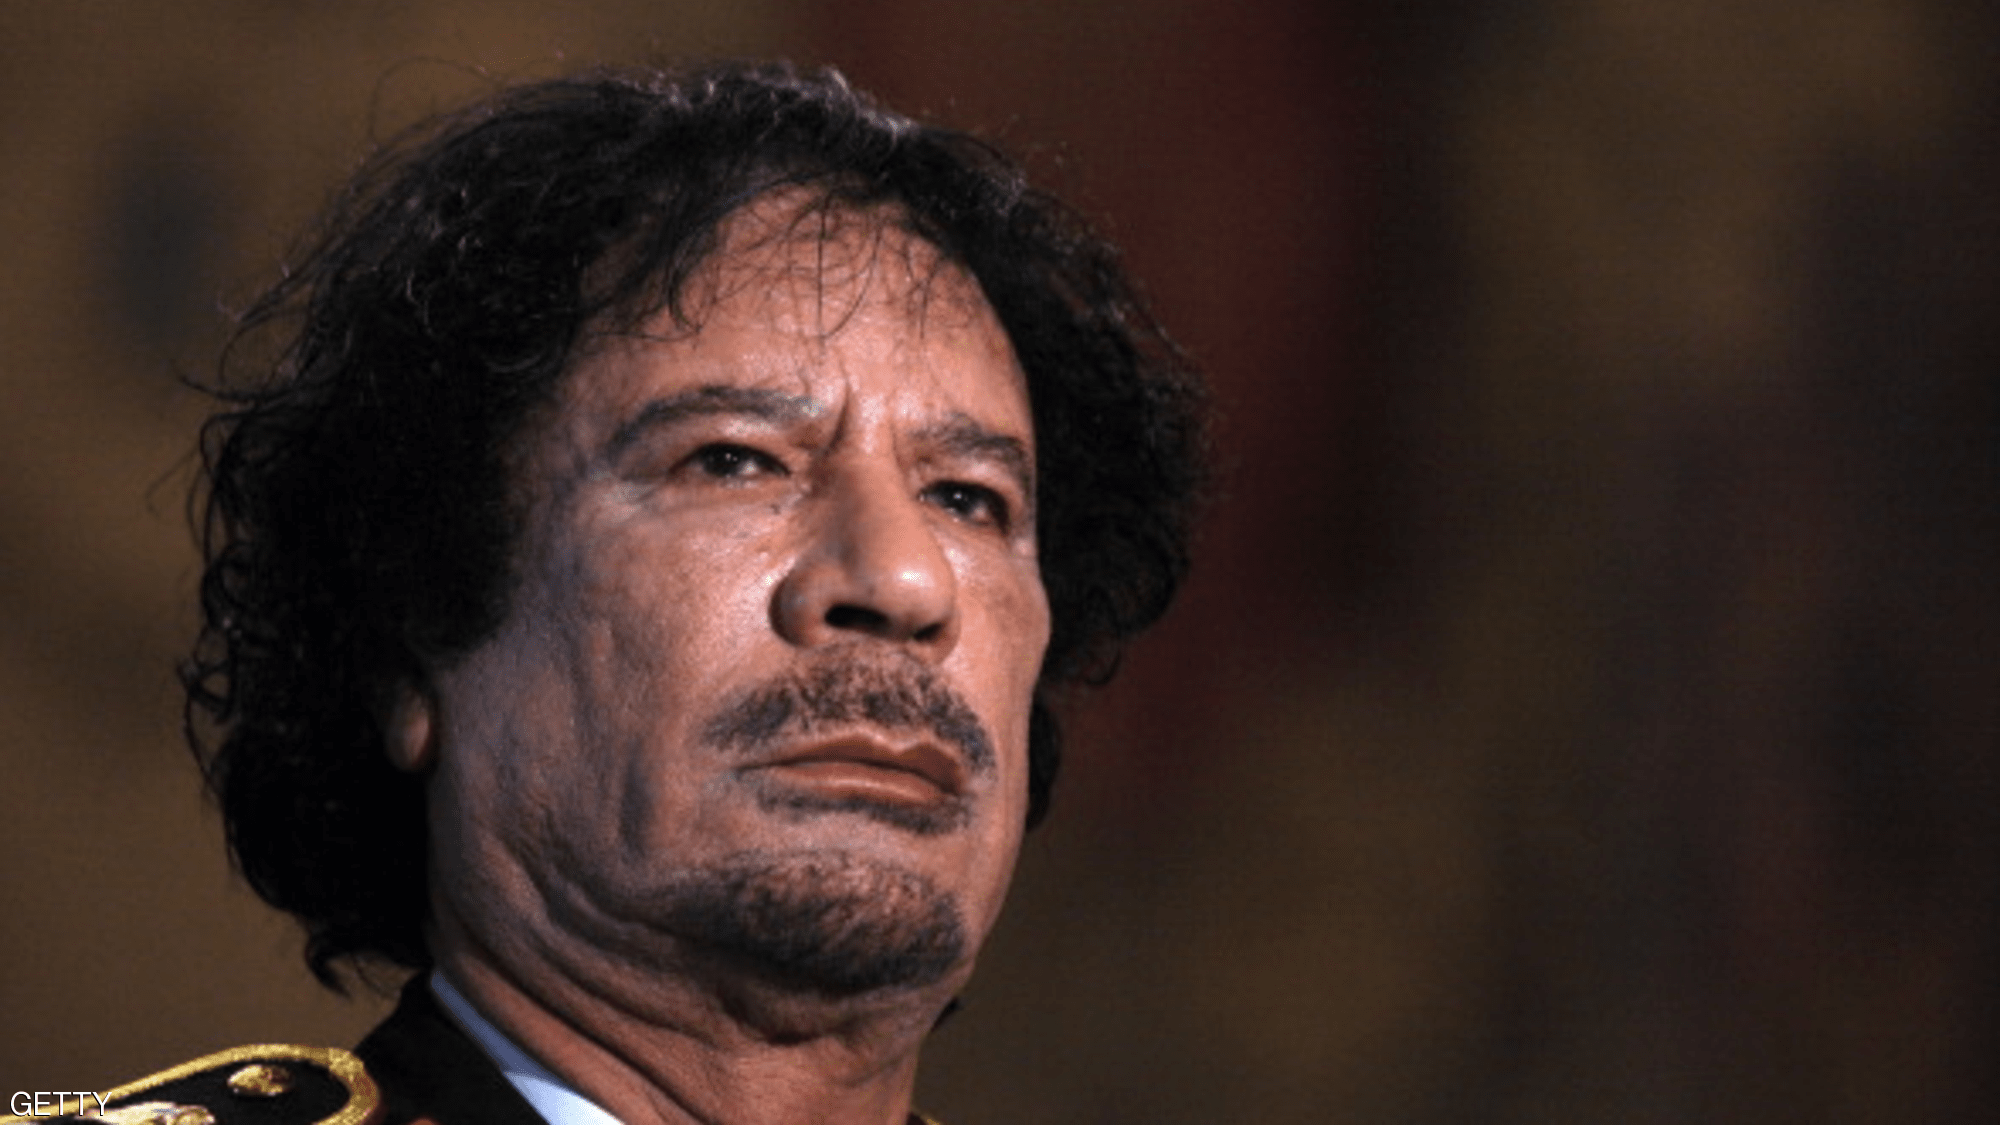   عائلة الرئيس الليبى الراحل «القذافى» تدين ما نشره السيناتور الأمريكى على تويتر